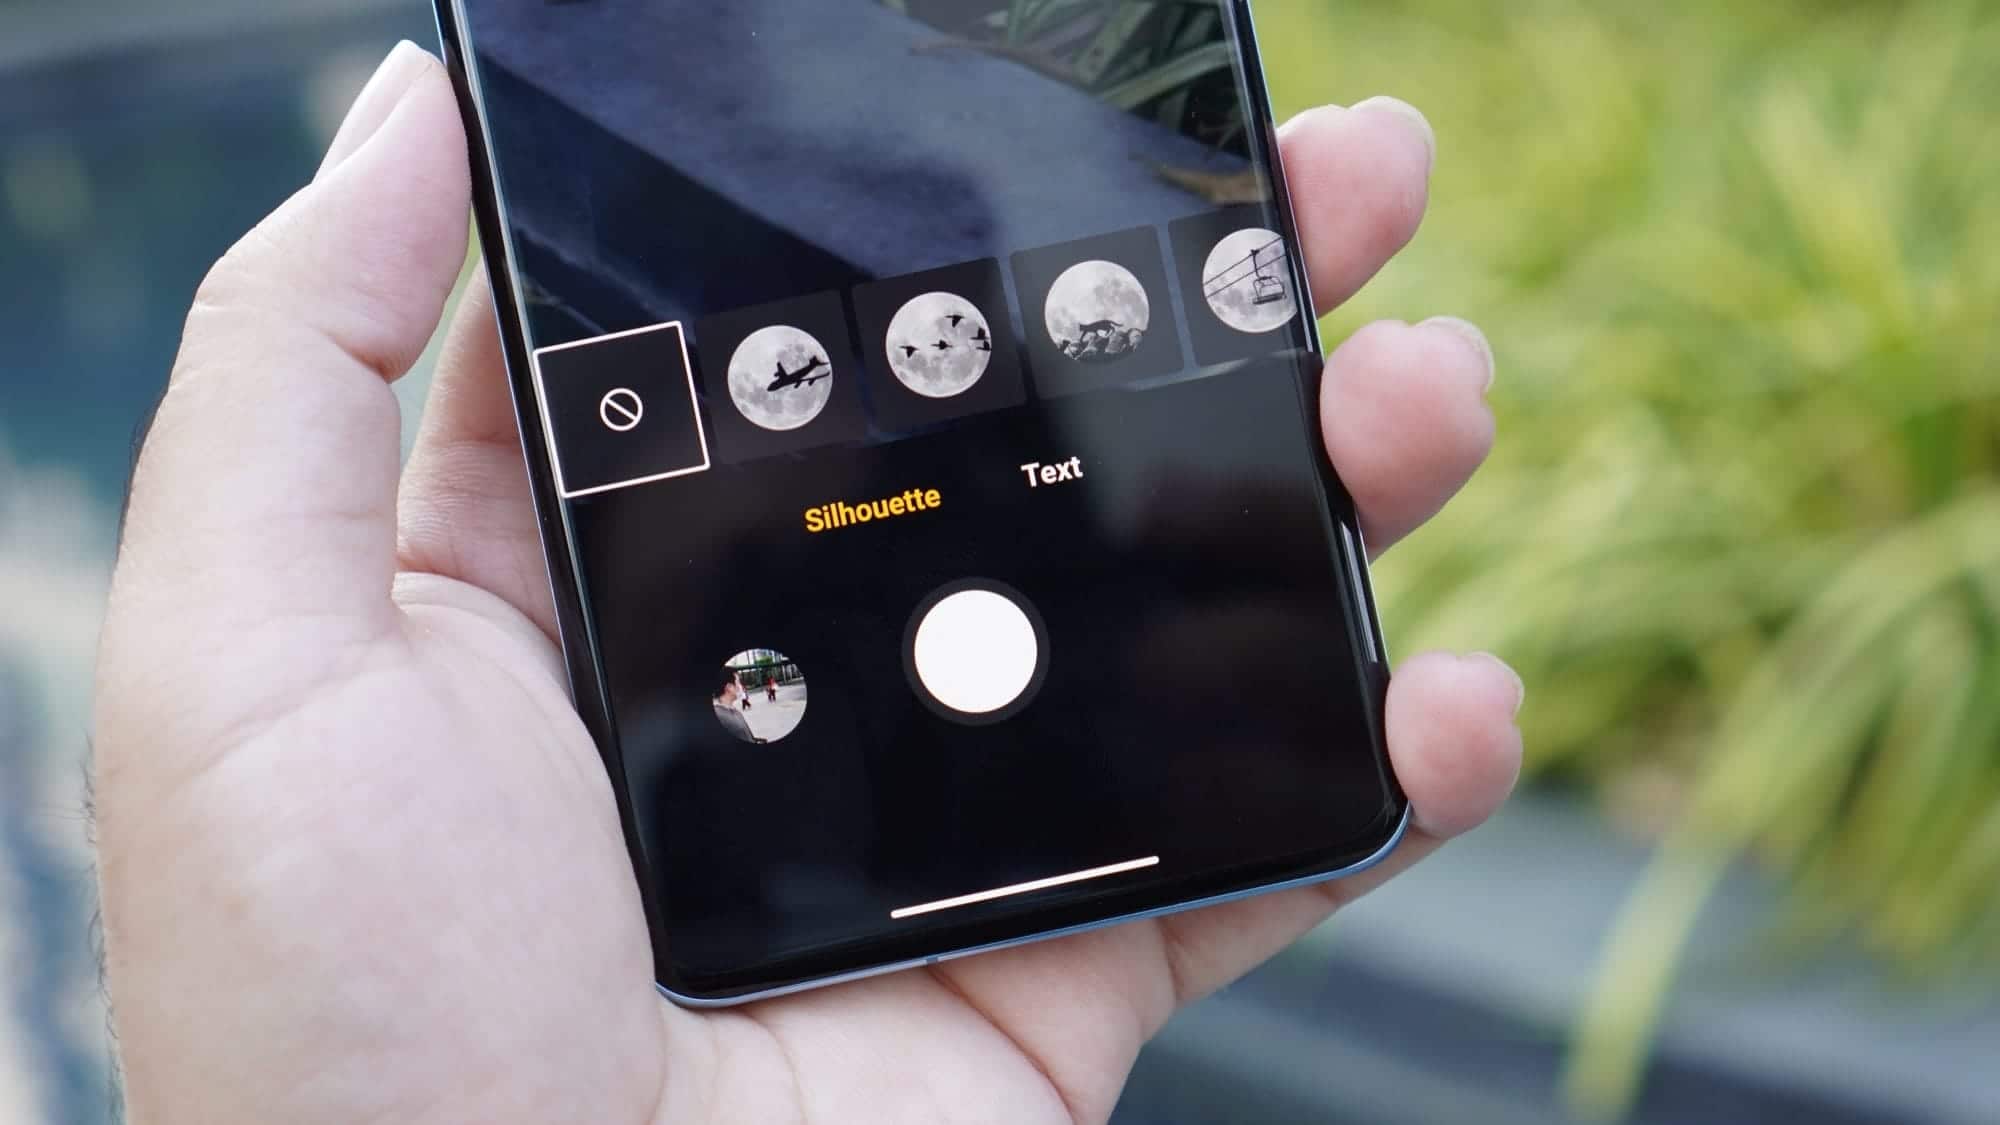 รีวิว Mi 11 สมาร์ทโฟนจาก Xiaomi ที่กล้องดีระดับน่าประทับใจ 59